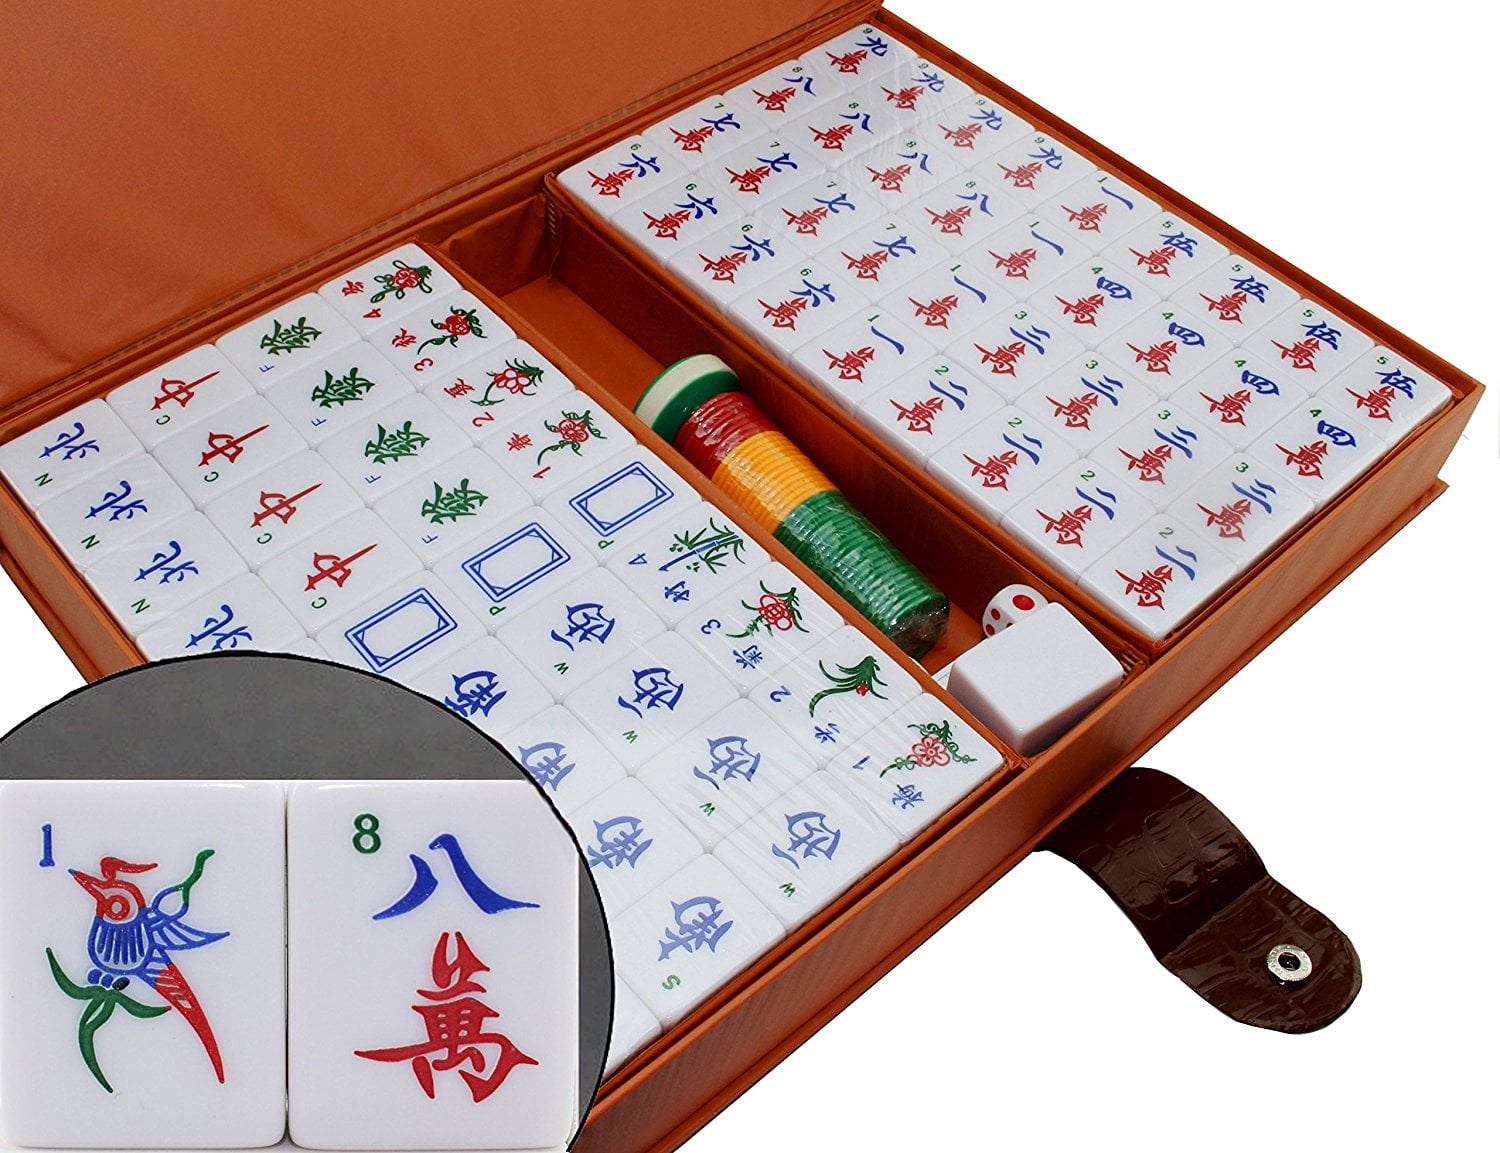 37273円 売れ筋ランキング Chinese Mahjong Mah Jong Game Tile Games Board Set Traditional